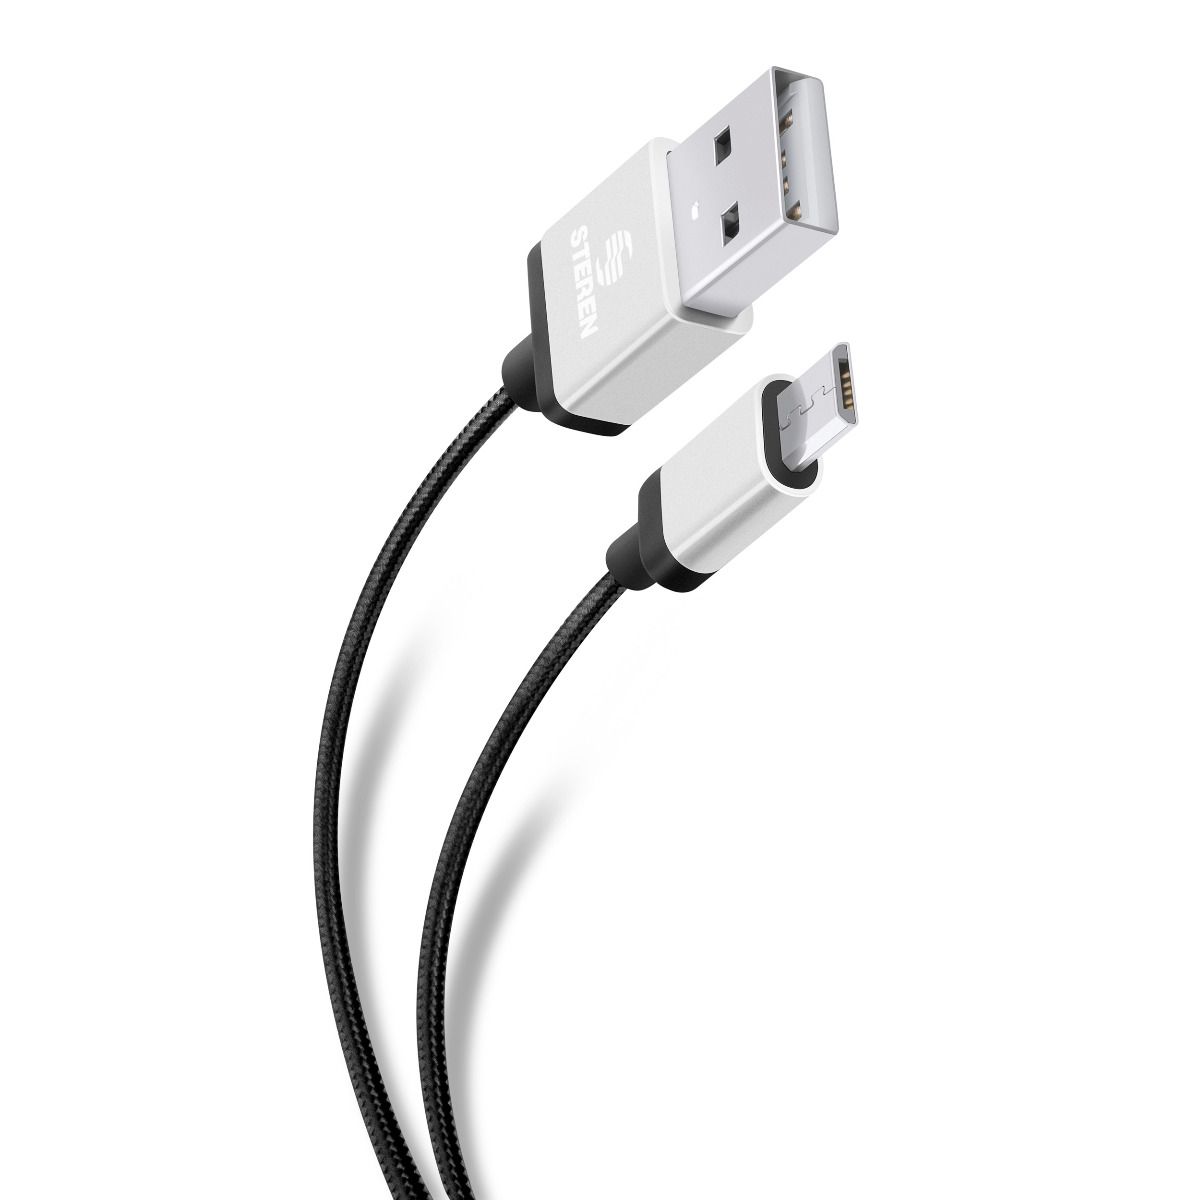 Cable USB a micro USB tipo cordón de 1 m